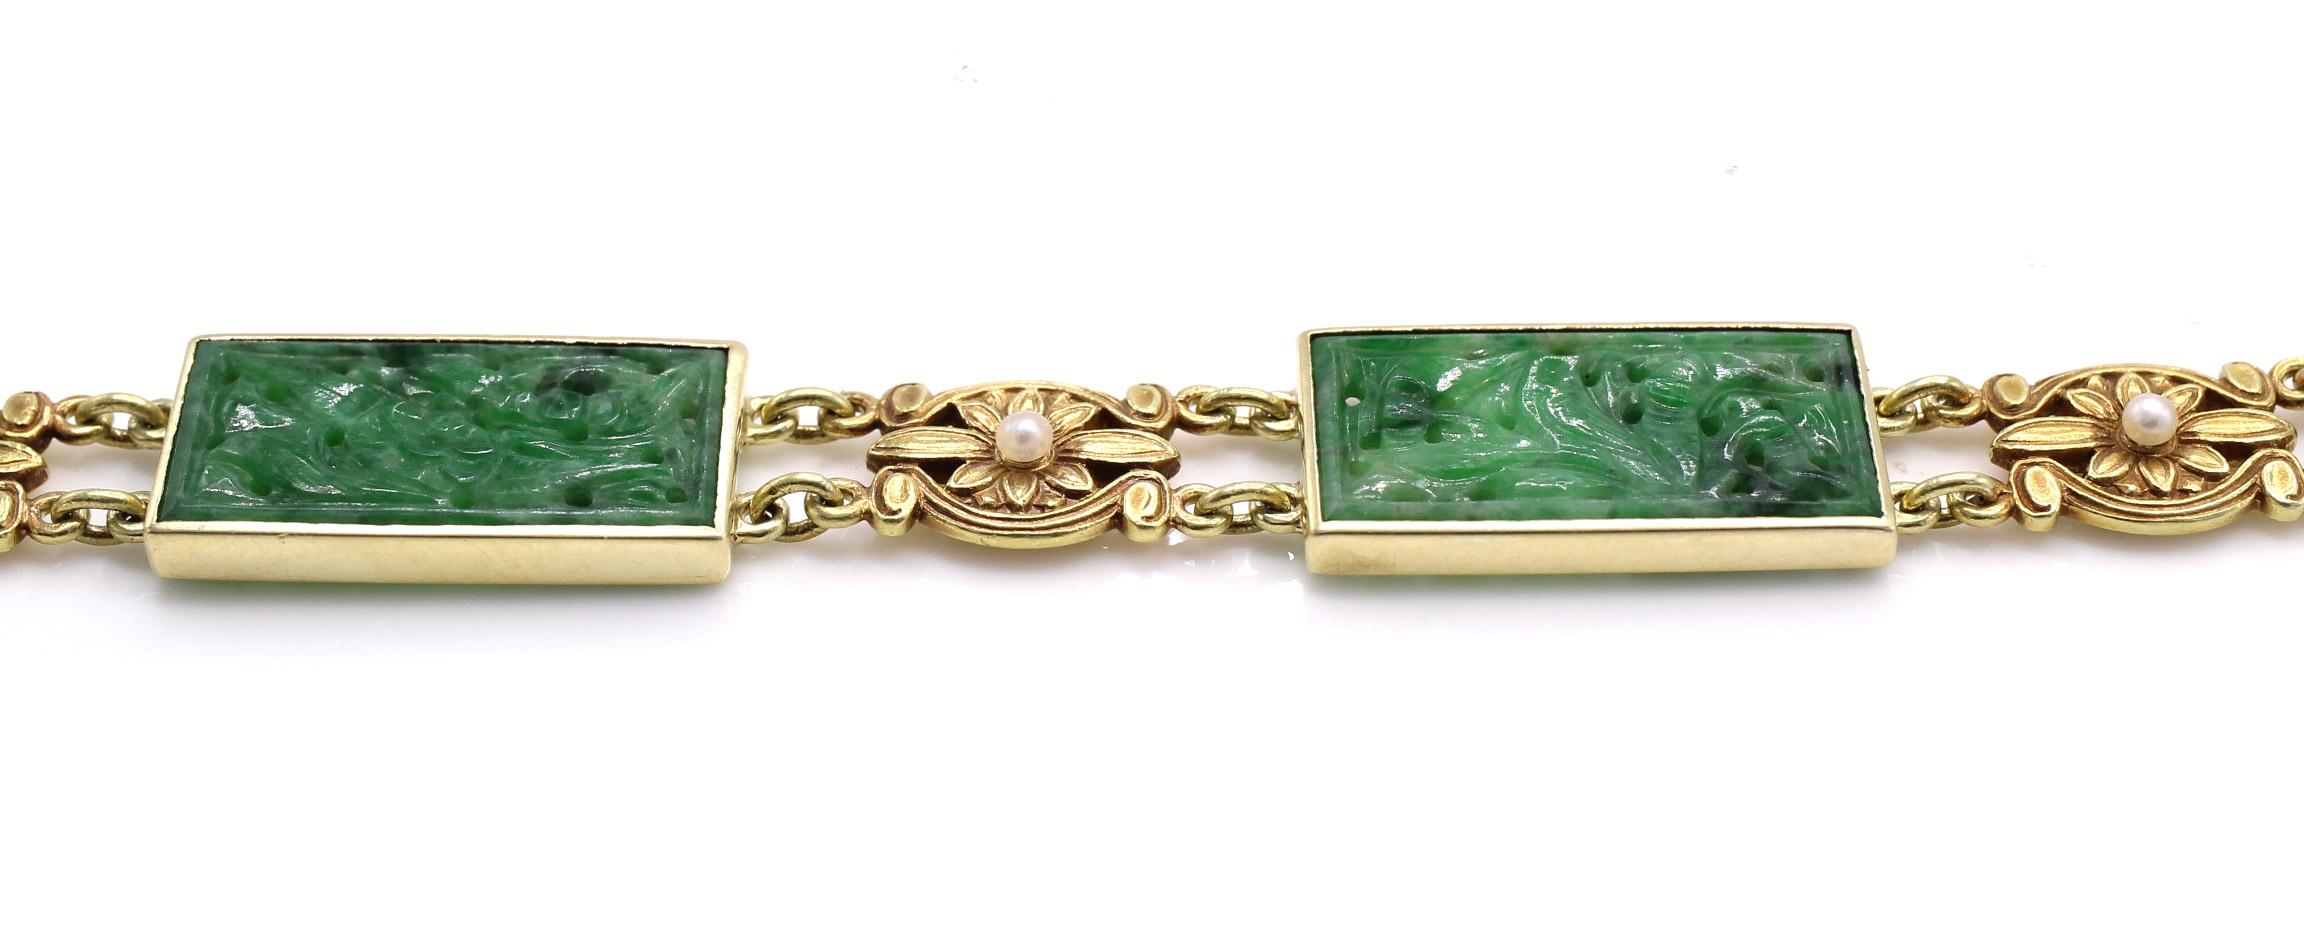 Dieses vom renommierten amerikanischen Juwelier Tiffany & Co. entworfene und in meisterhafter Handarbeit gefertigte Armband ist ein wahres Stück Kunst und Geschichte am Handgelenk. 3 wunderschön geschnitzte, rechteckige Jadeit-Stücke sind in einem